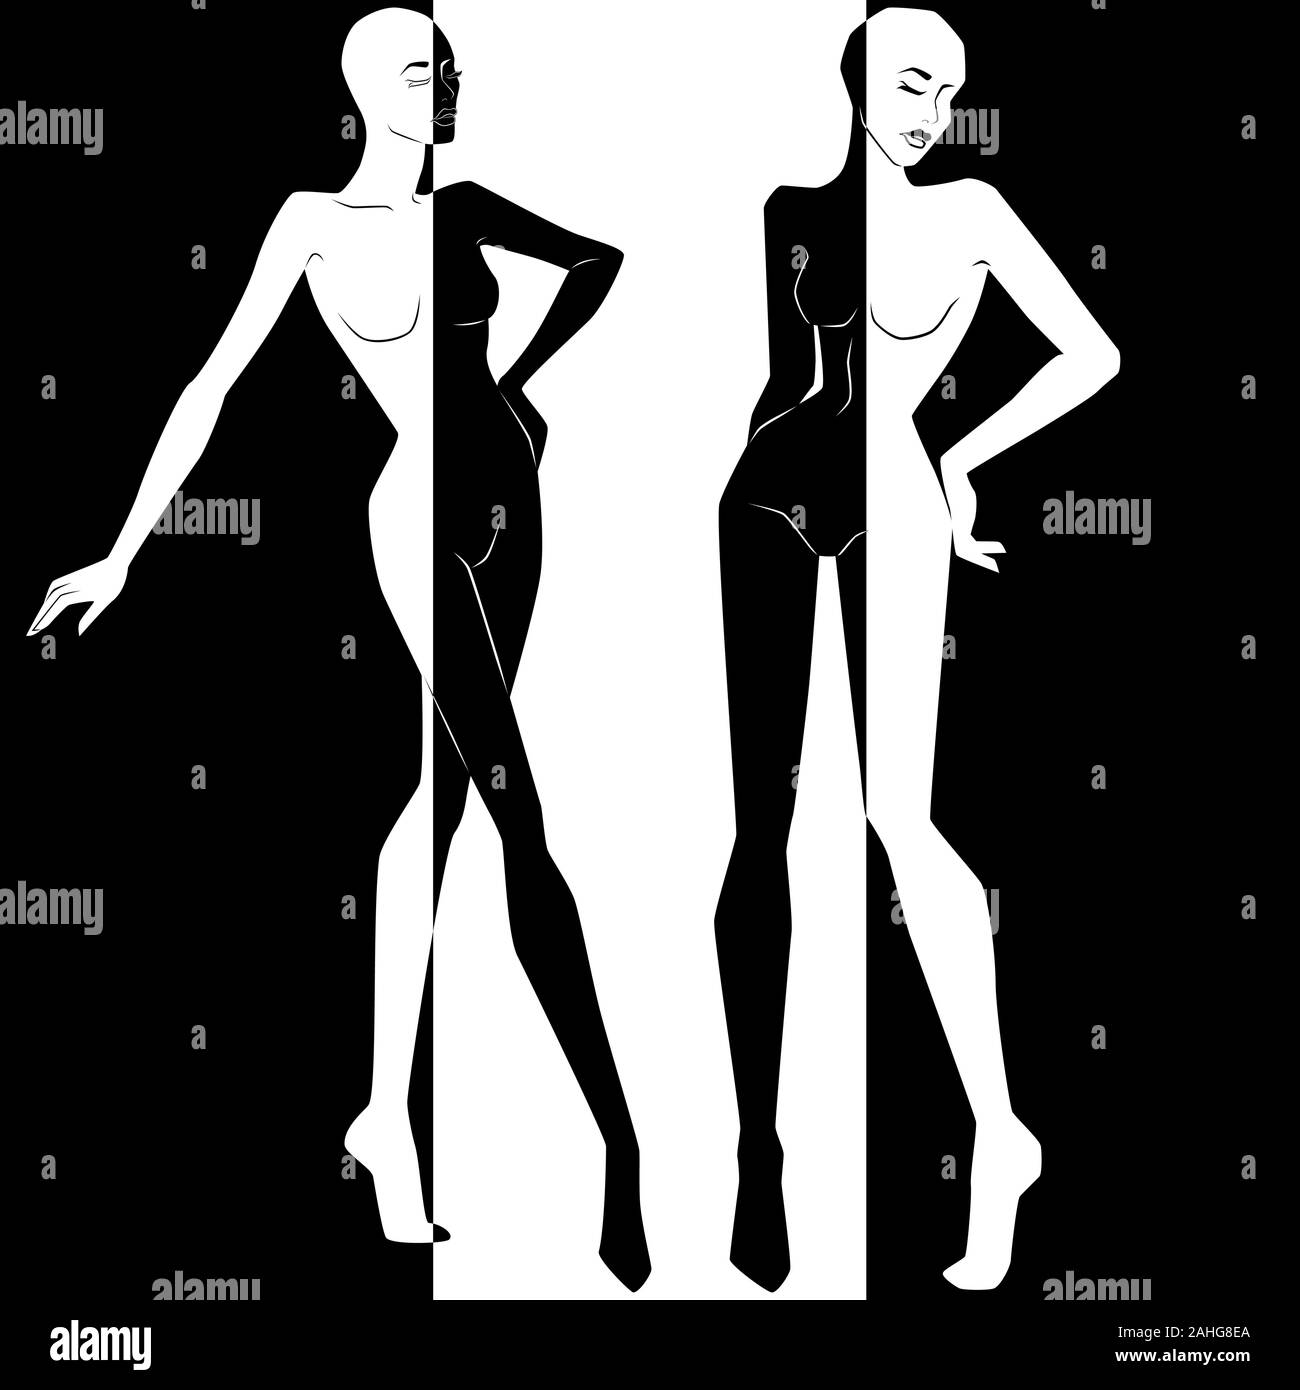 Zusammenfassung von zwei attraktive Frauen in Negativ Positiv Raum Split, Schwarze und Weiße konzeptionelle Ausdruck, hand Zeichnung Abbildung Stock Vektor